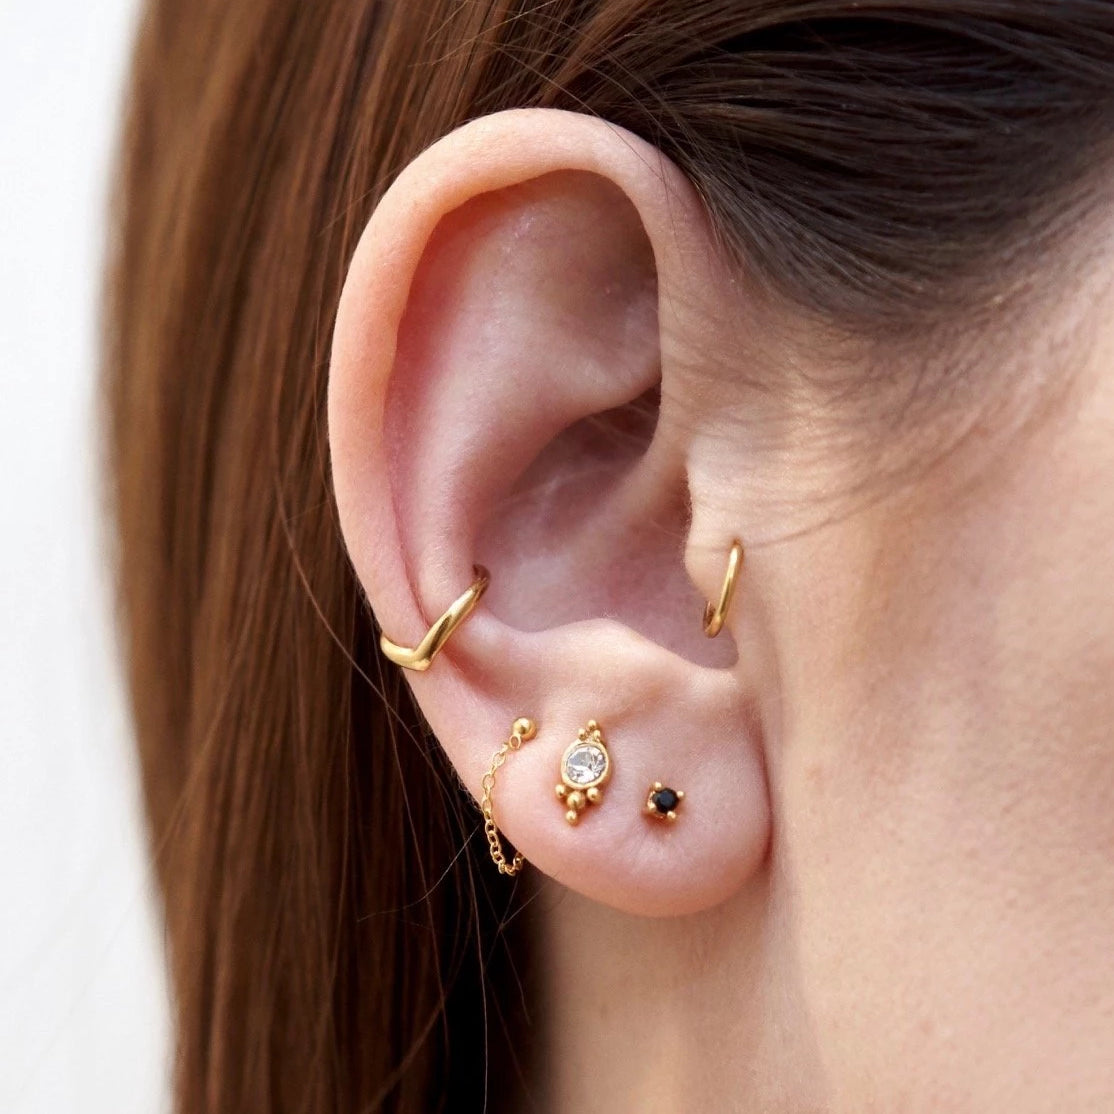 J&CO Jewellery Mini Bezel Stud Earrings